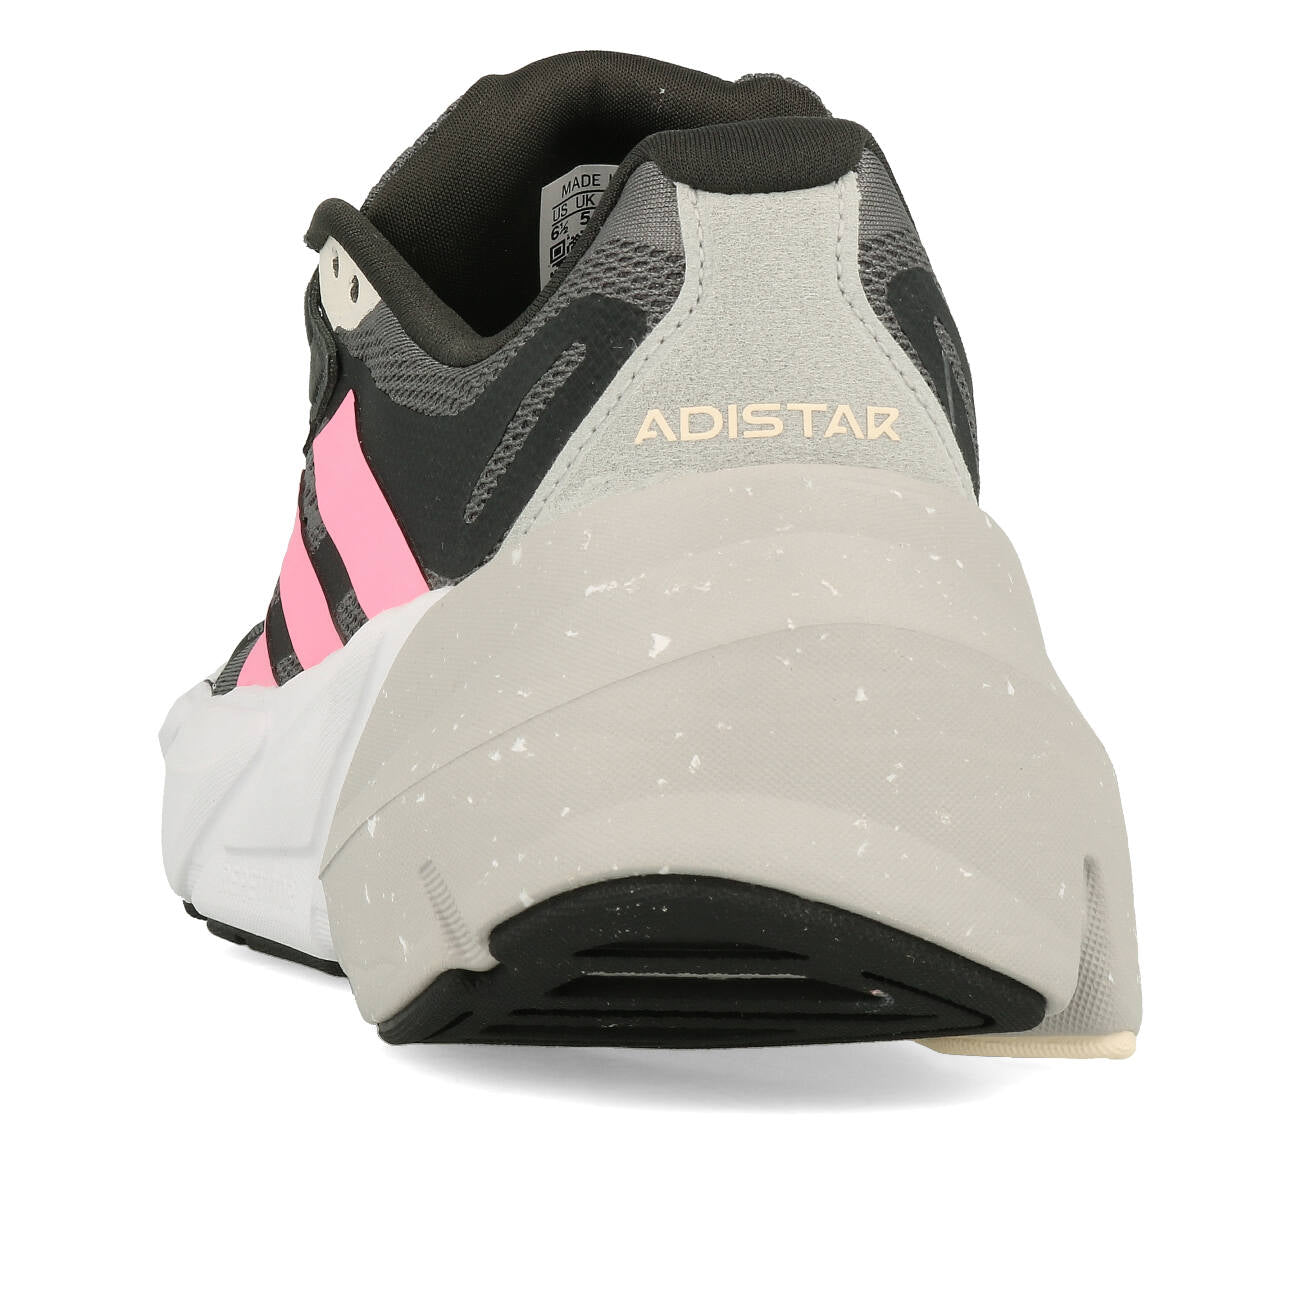 adidas Adistar 1 W Damen Grey Four Beam Pink Ecru Tint